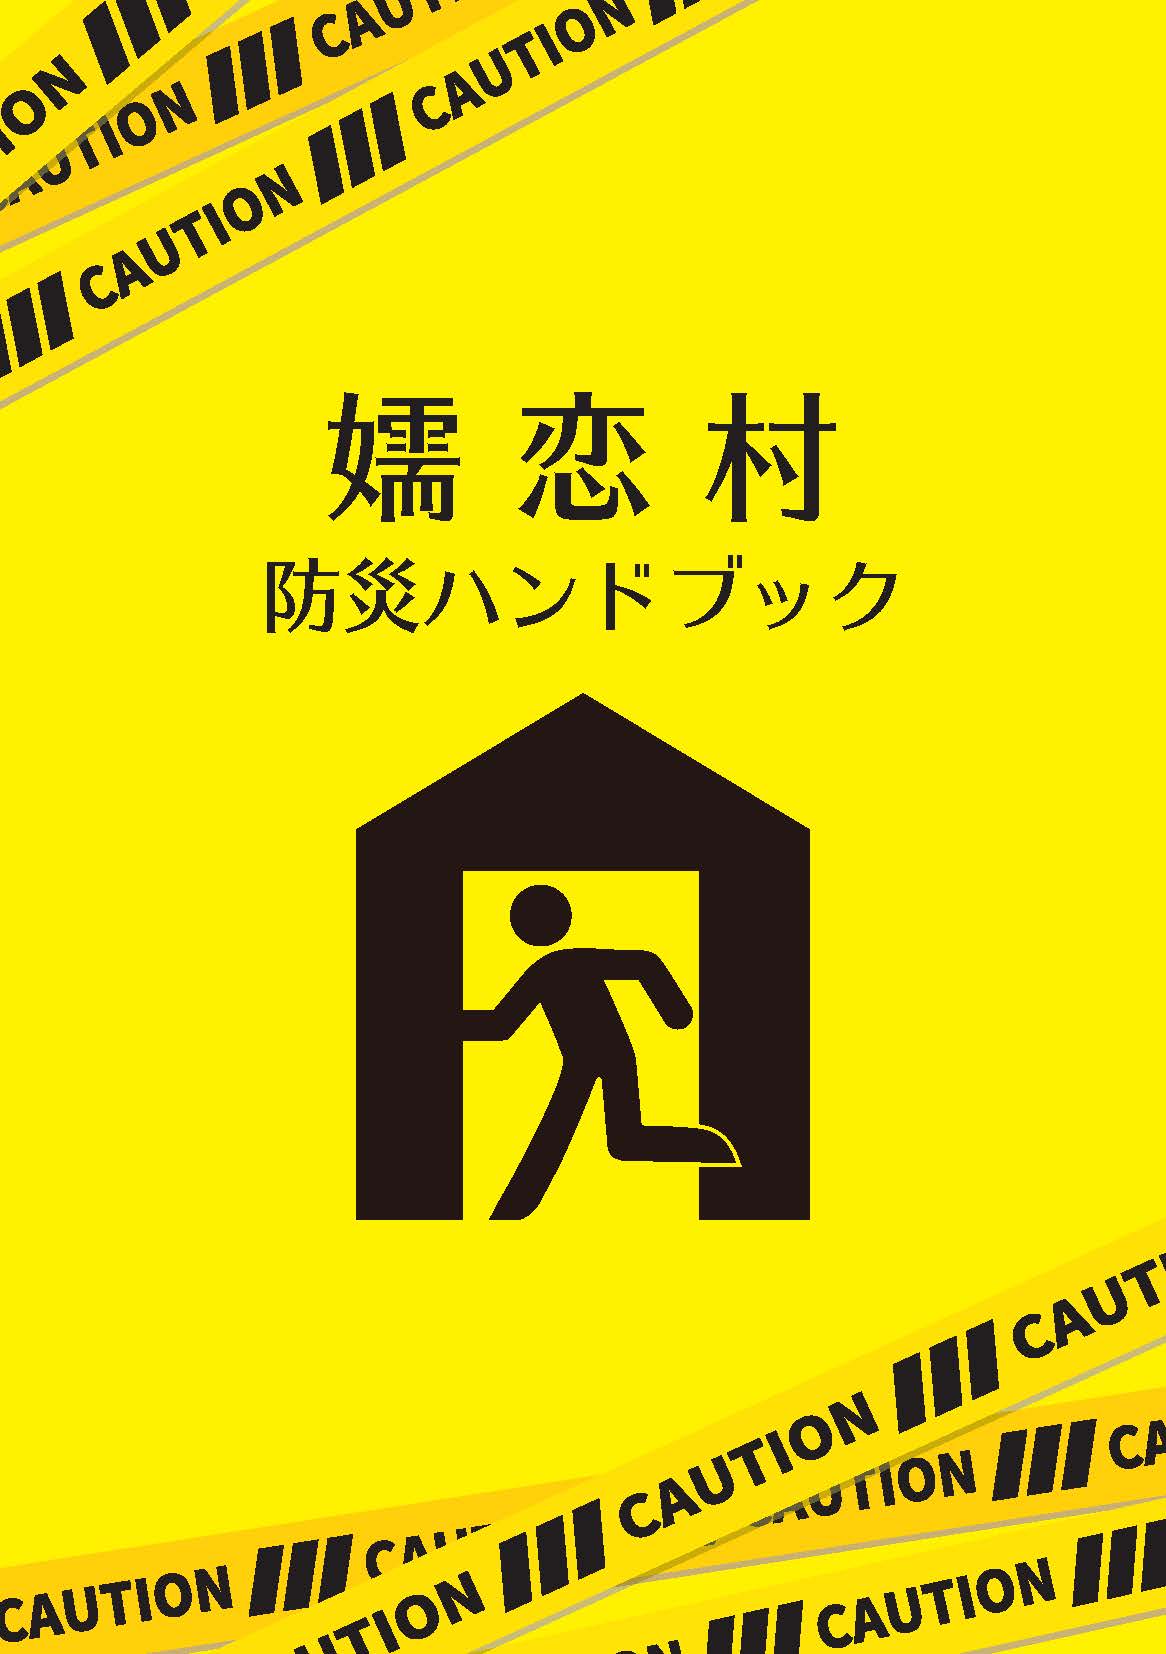 嬬恋村防災ハンドブックの表紙画像です